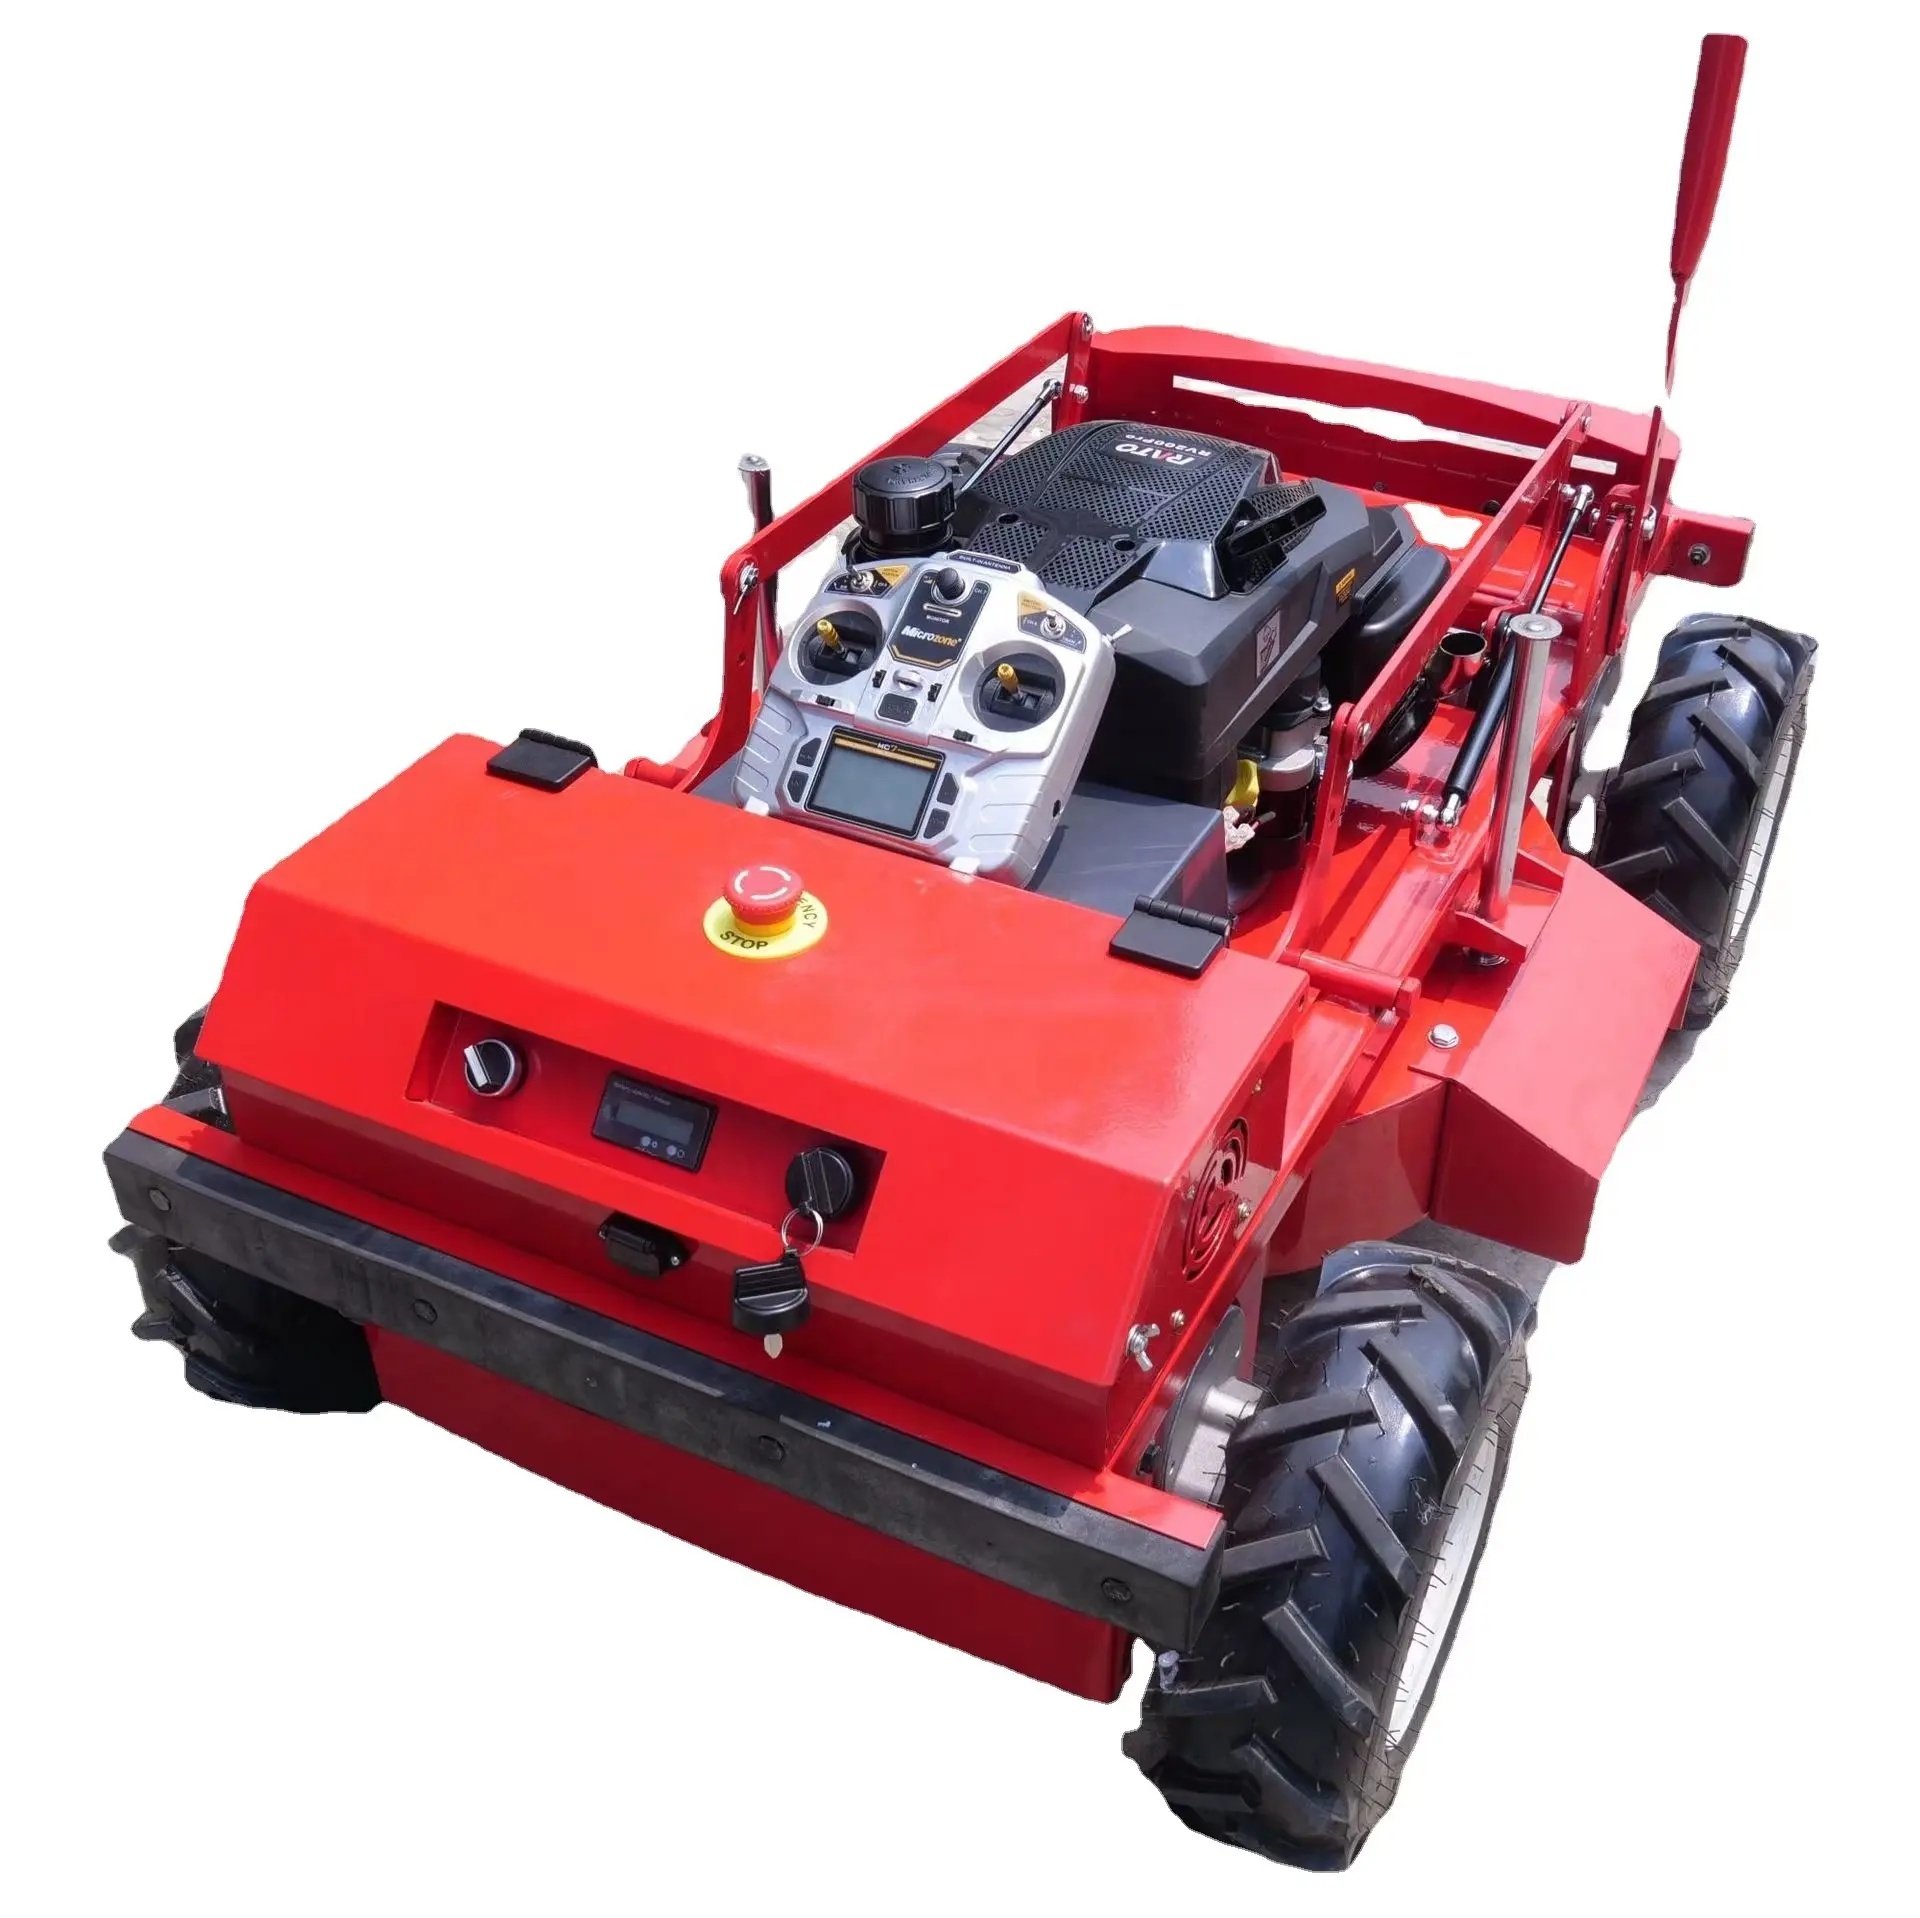 Yeni 550mm tekerlek çim biçme makinesi sıfır dönüş ve yardımcı araçlarla donatılabilir ve birden fazla senaryoda kullanılabilir